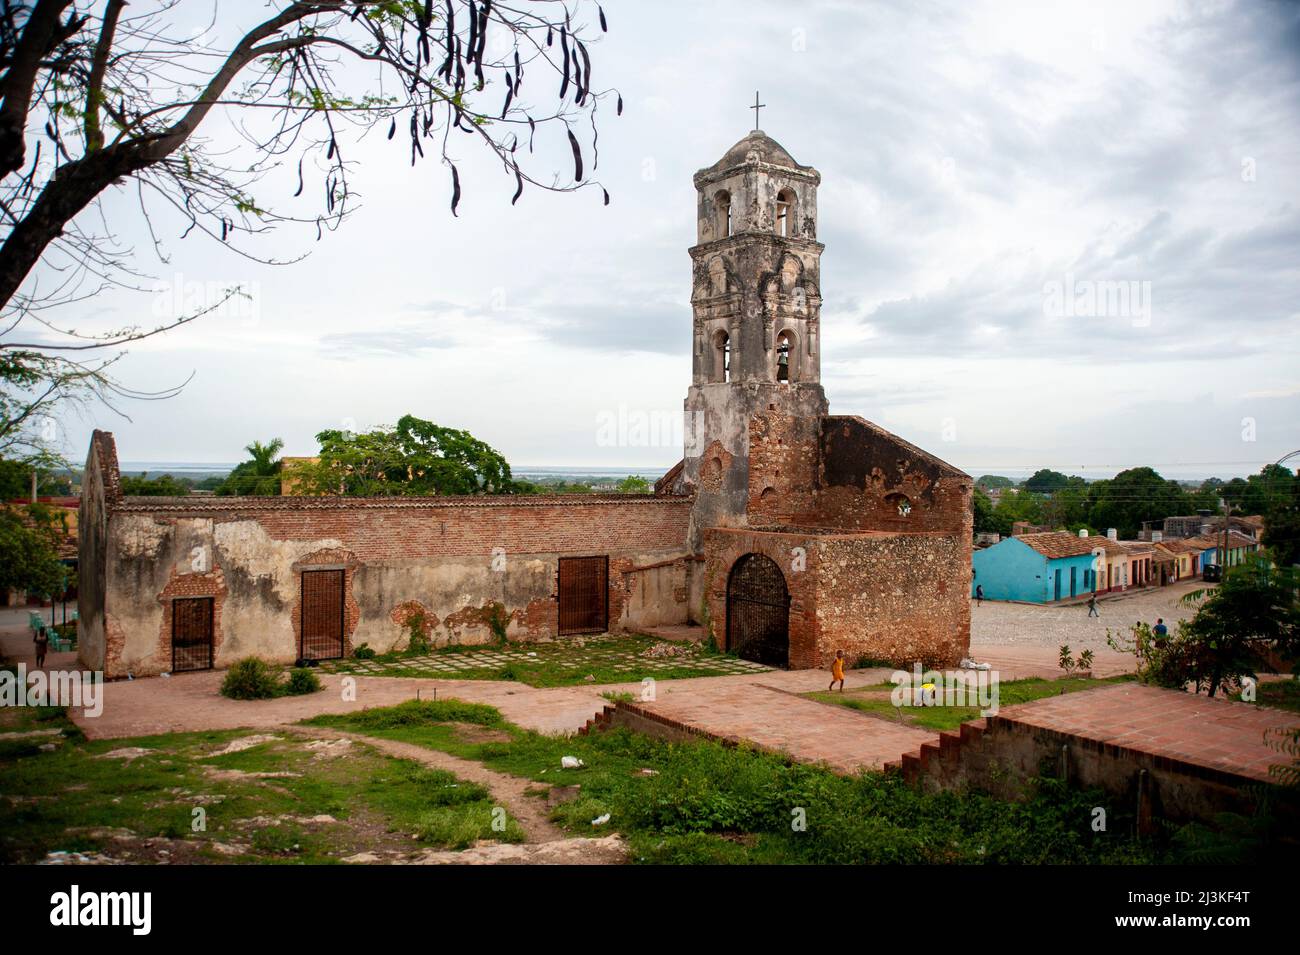 Église Santa Ana. Une vieille église en ruine à Trinidad, Cuba avec vue sur le ciel et l'océan des Caraïbes au loin. Banque D'Images